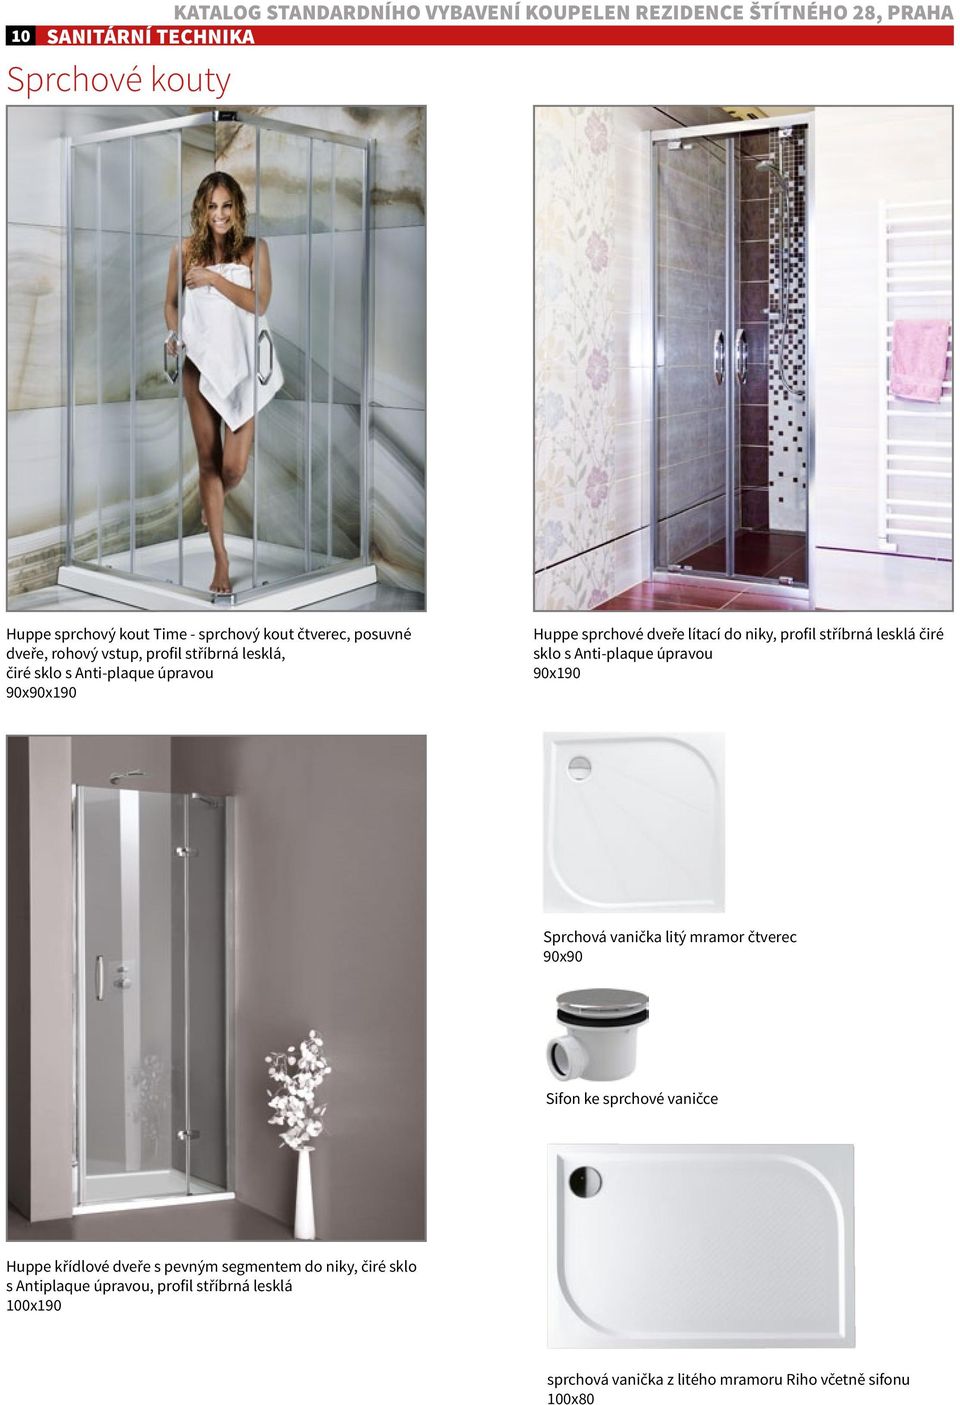 stříbrná lesklá čiré sklo s Anti-plaque úpravou 90x190 Sprchová vanička litý mramor čtverec 90x90 Sifon ke sprchové vaničce Huppe křídlové dveře s